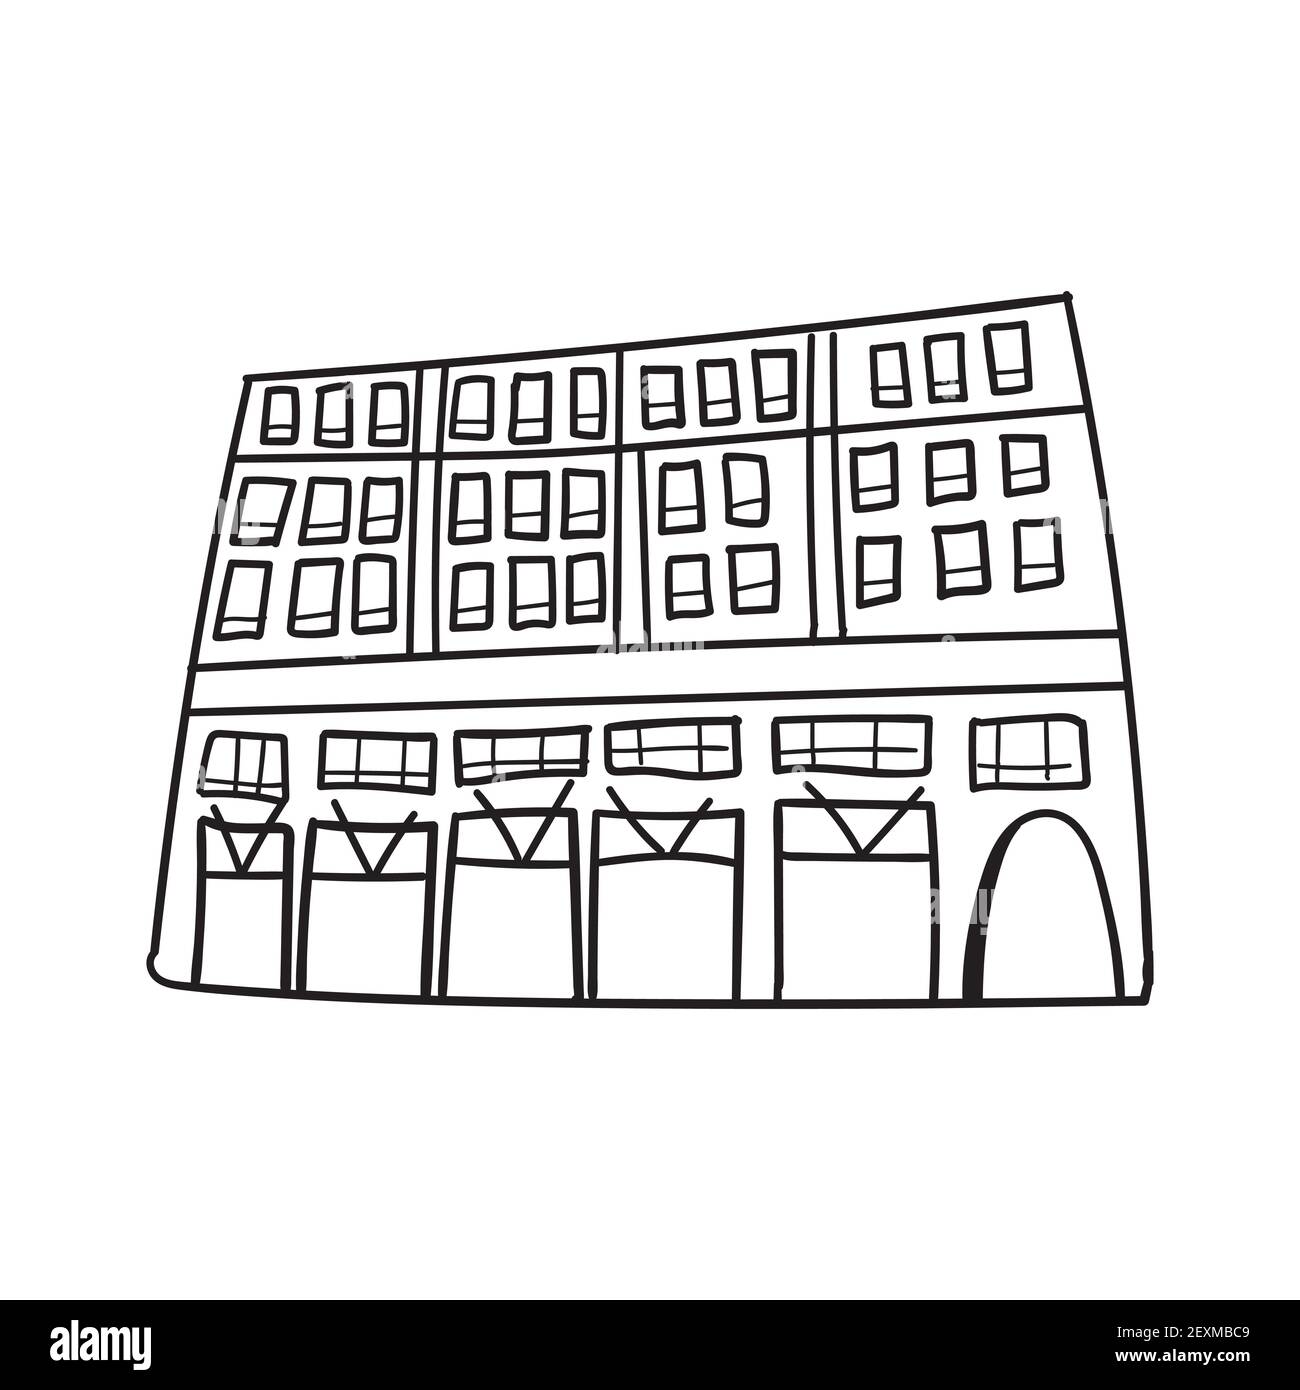 Doodle handgezeichnete Skizze des modernen hohen Gebäudes mit Fenstern. Schwarzer Umriss. Vektorgrafik isoliert auf weißem Hintergrund Stock Vektor